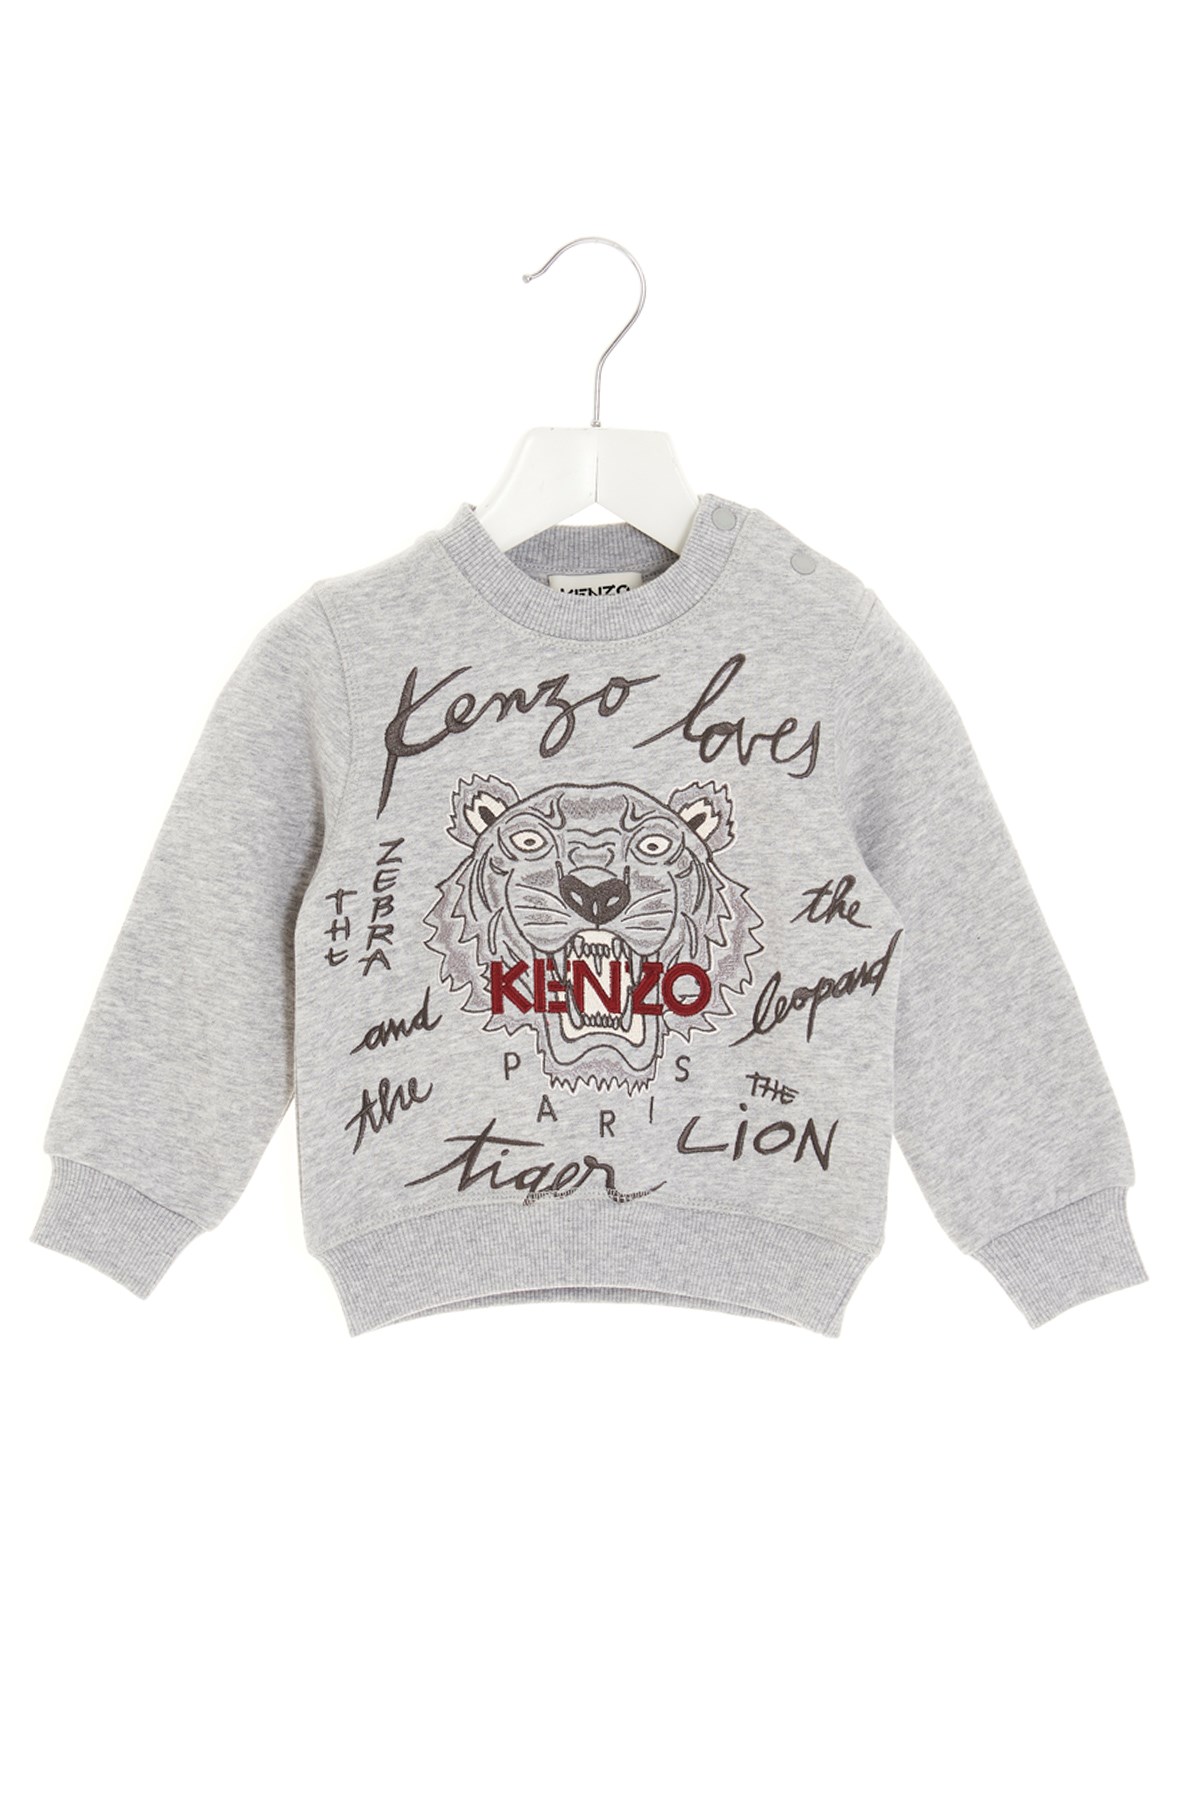 KENZO KIDS Logo Embroidery Sweatshirt